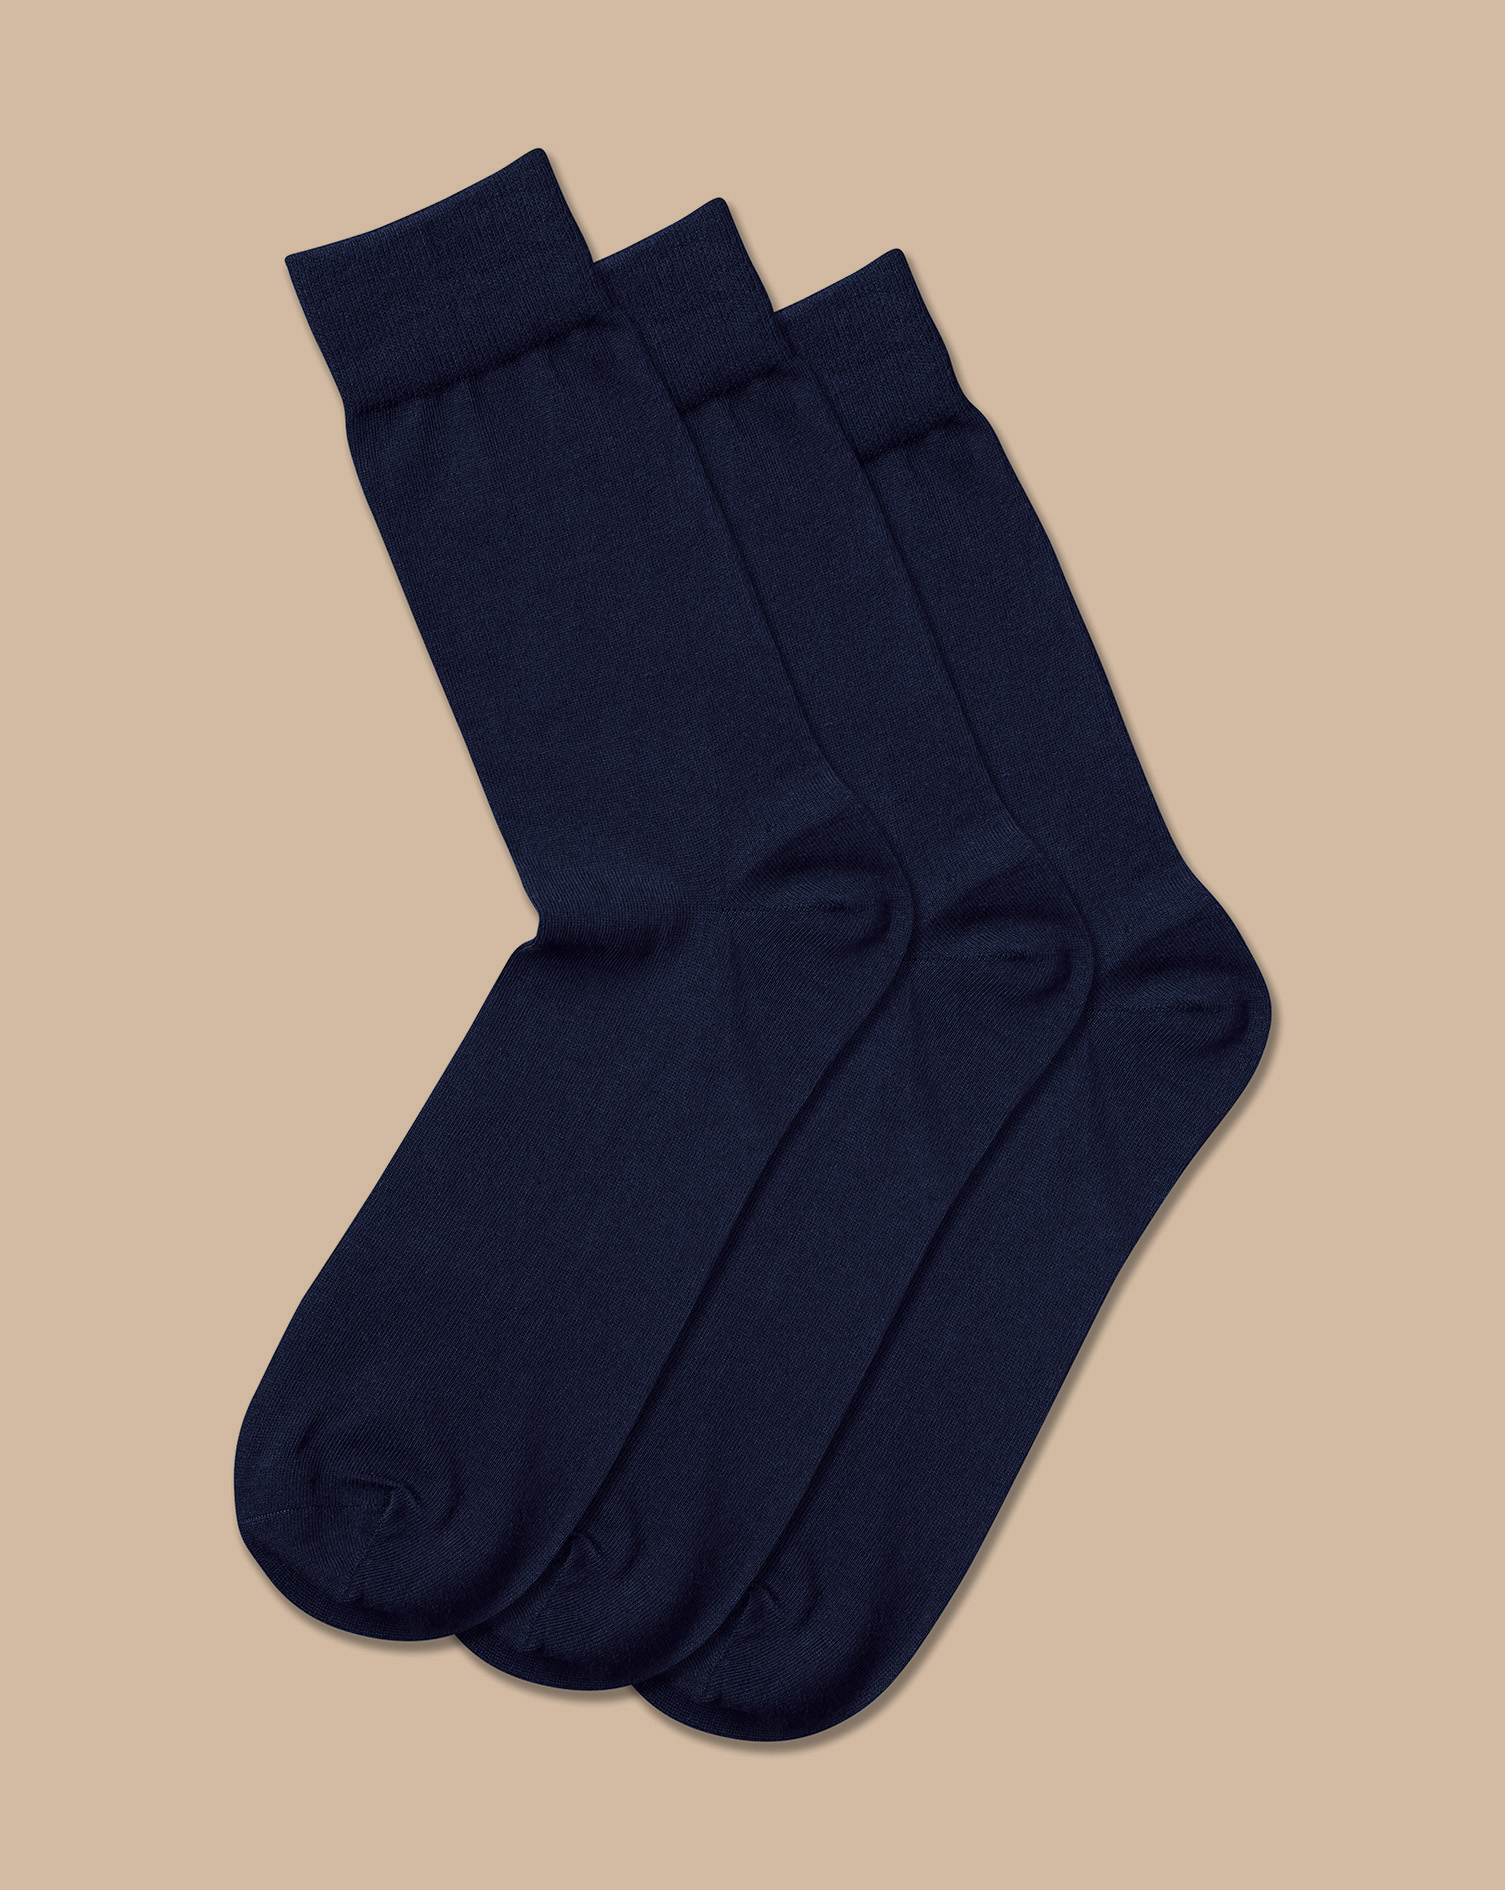 Men's Charles Tyrwhitt Rich 3 Pack Socks - Navy Blue Size 6-10 Cotton
